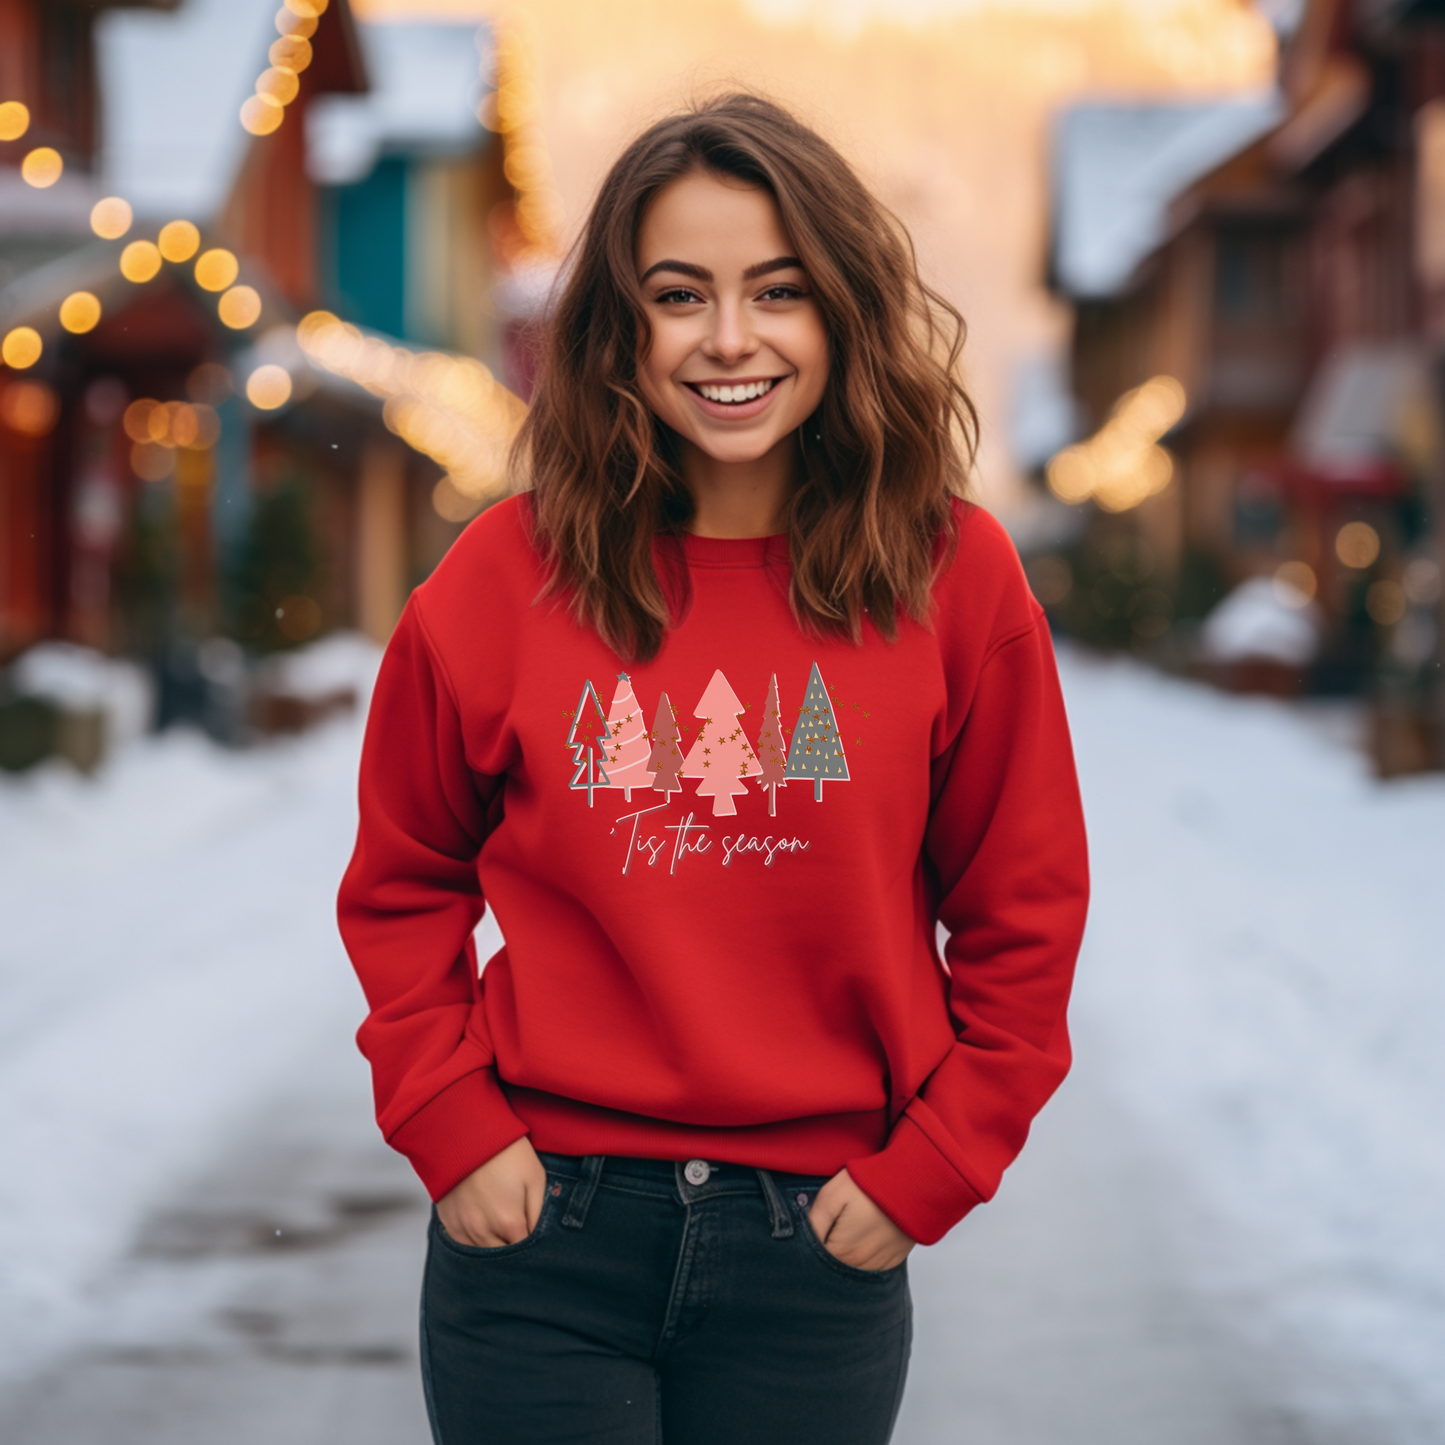 Red Christmas Tree Sweatshirt |  Crewneck, Christmas Tree Sweatshirt, Holiday Sweaters for Women, Winter Sweatshirt